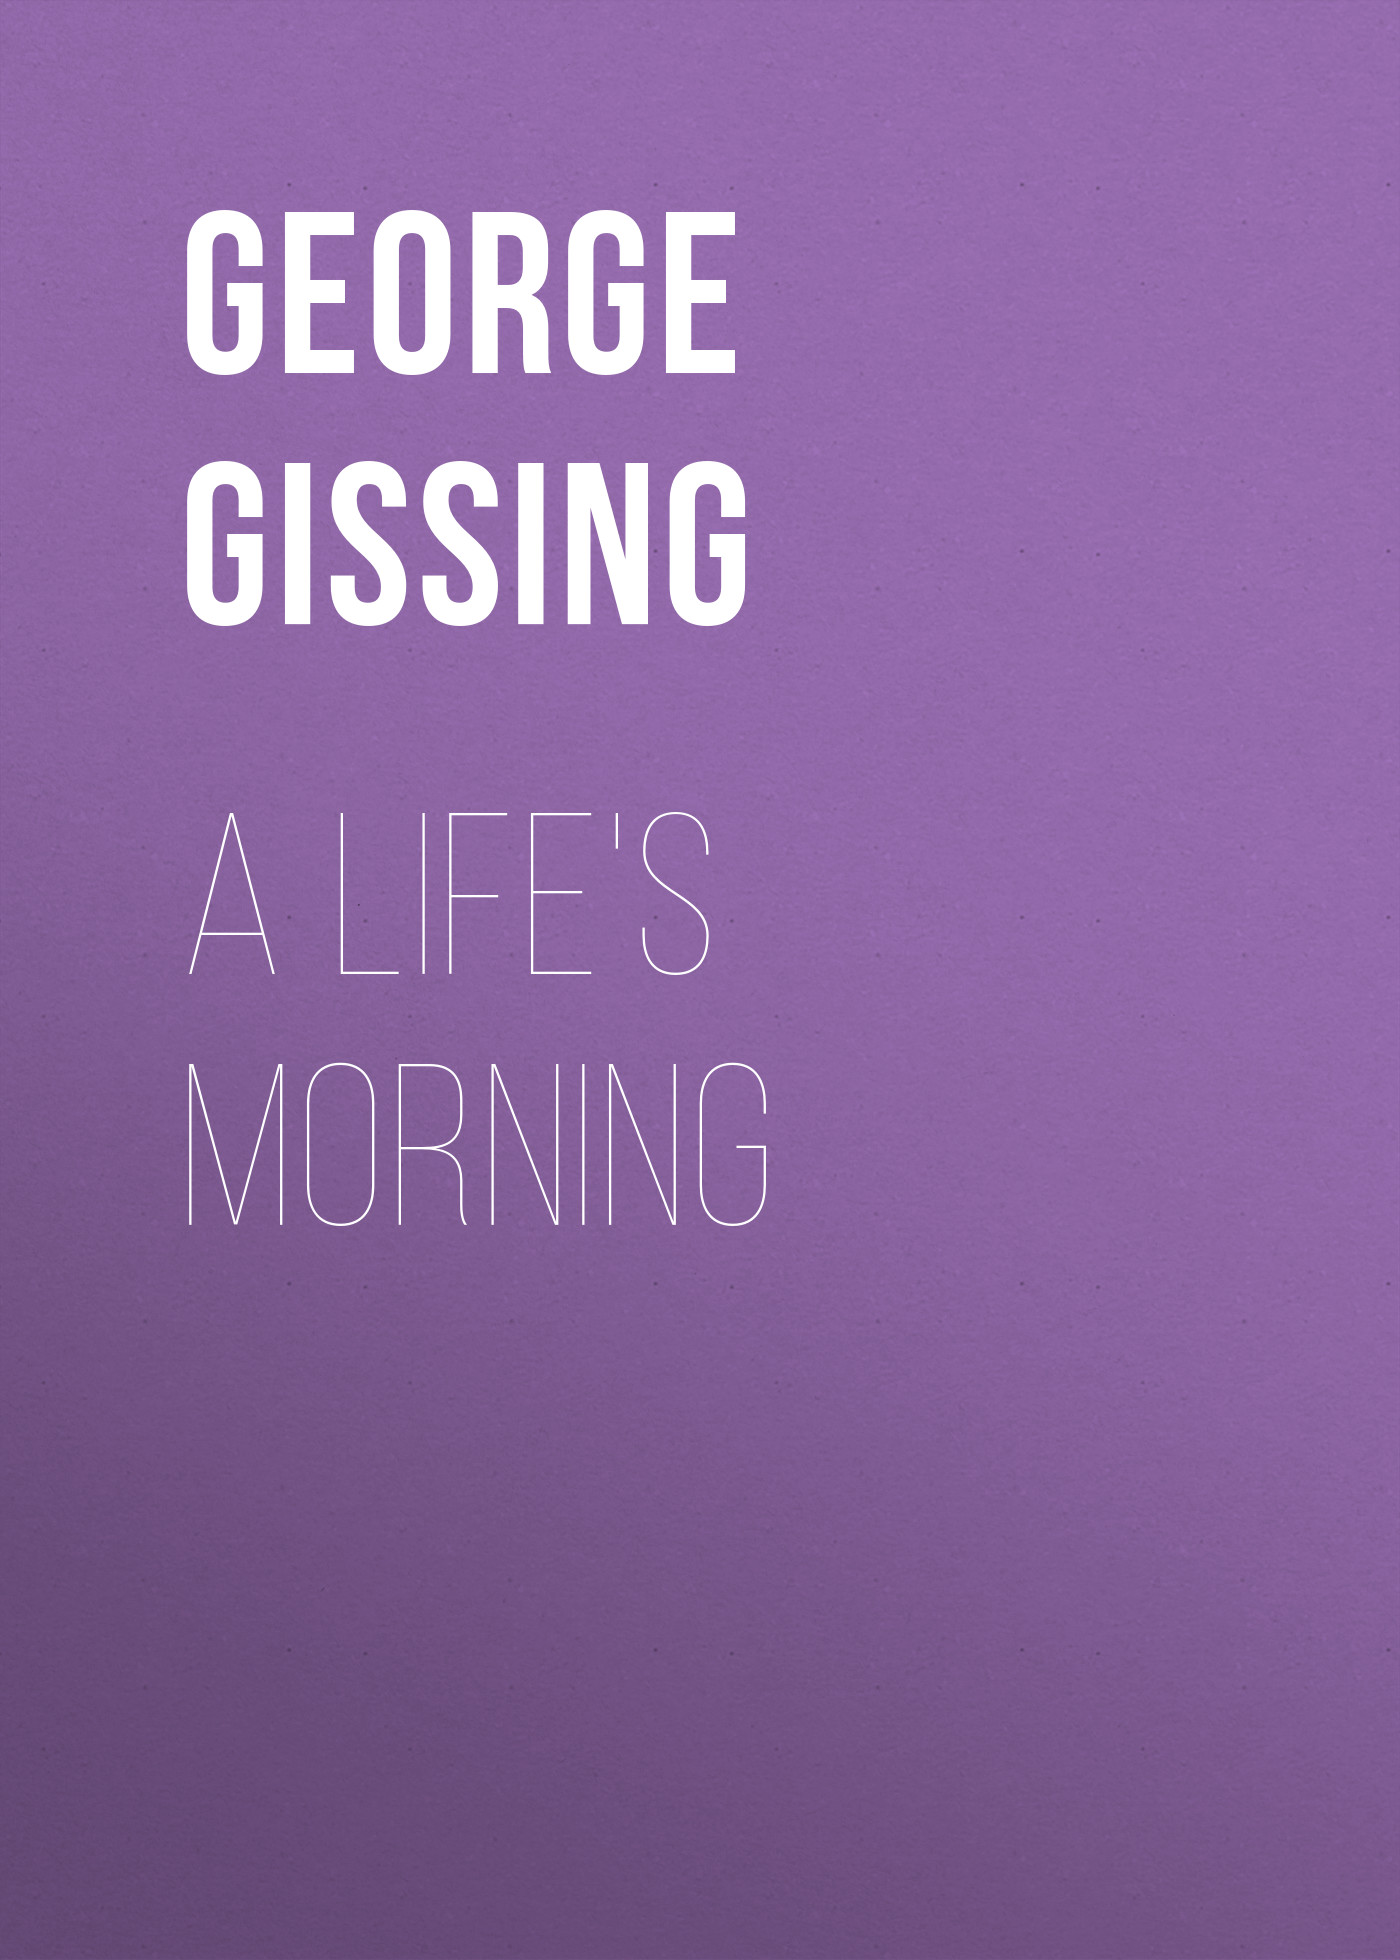 Книга A Life's Morning из серии , созданная George Gissing, может относится к жанру Зарубежная классика, Литература 19 века, Зарубежная старинная литература. Стоимость электронной книги A Life's Morning с идентификатором 38306713 составляет 0 руб.